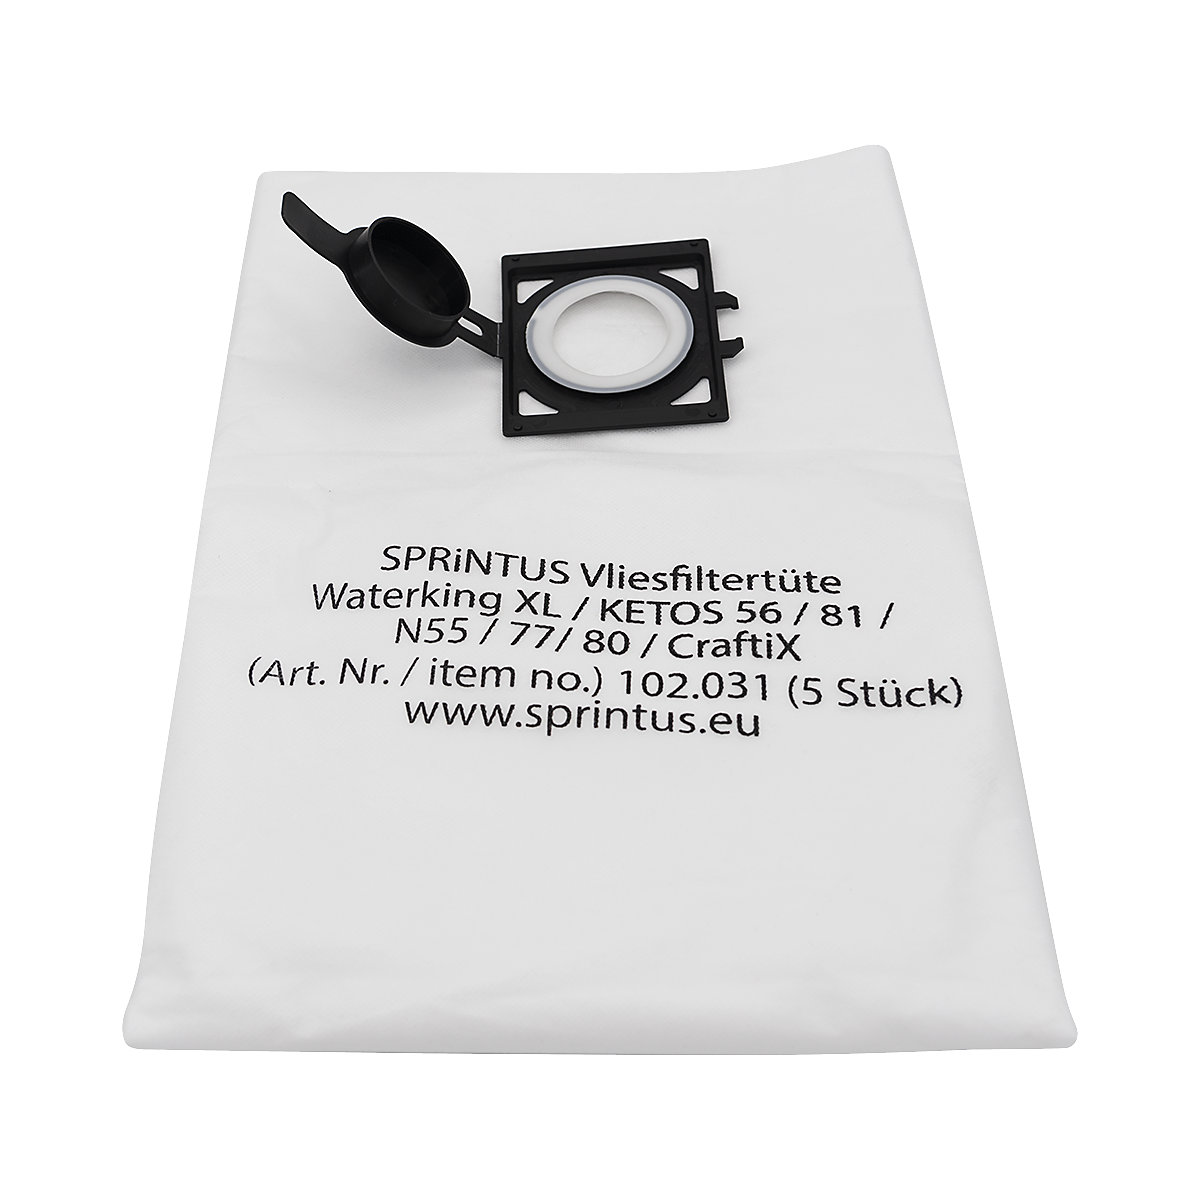 Sacos de filtro em velo, embalagem de 5 unid. – Sprintus